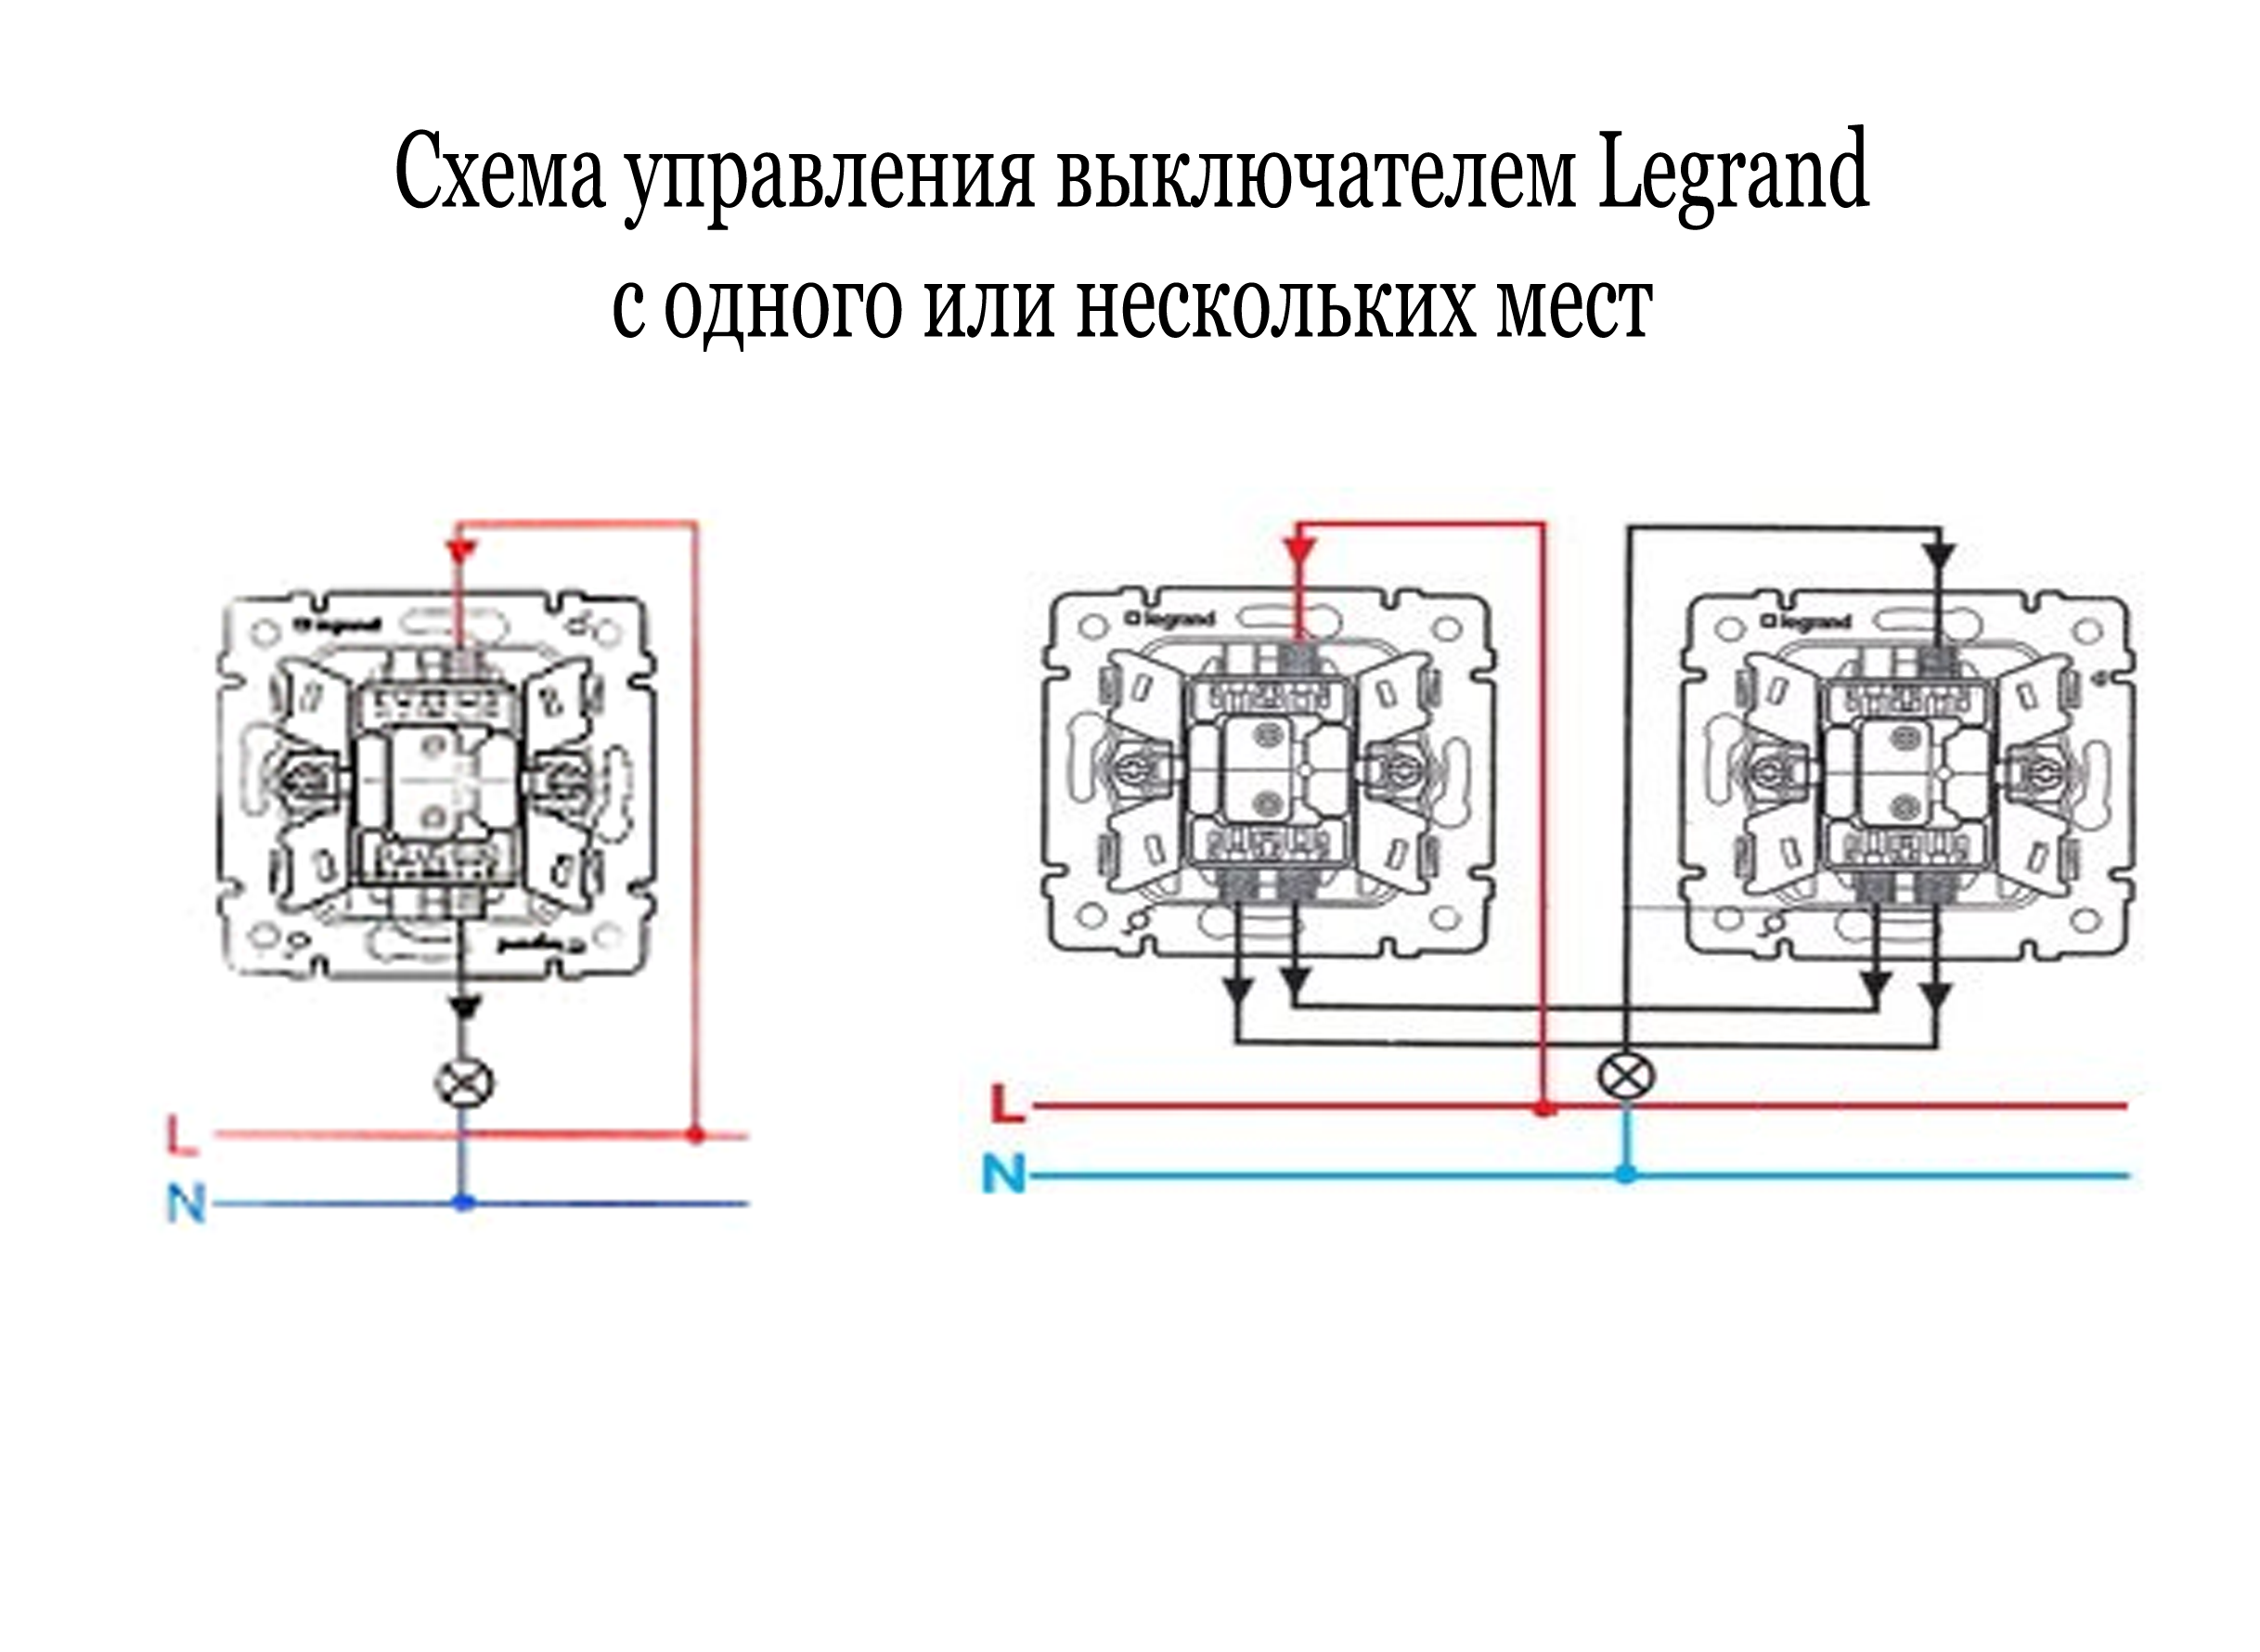 Как подключить выключатель legrand. Схема включения проходных выключателей с 2 мест Legrand. Проходной переключатель Legrand схема двухклавишный Etika. Схема проходного выключателя одноклавишного Legrand. Выключатель Legrand Etika схема выключателей.